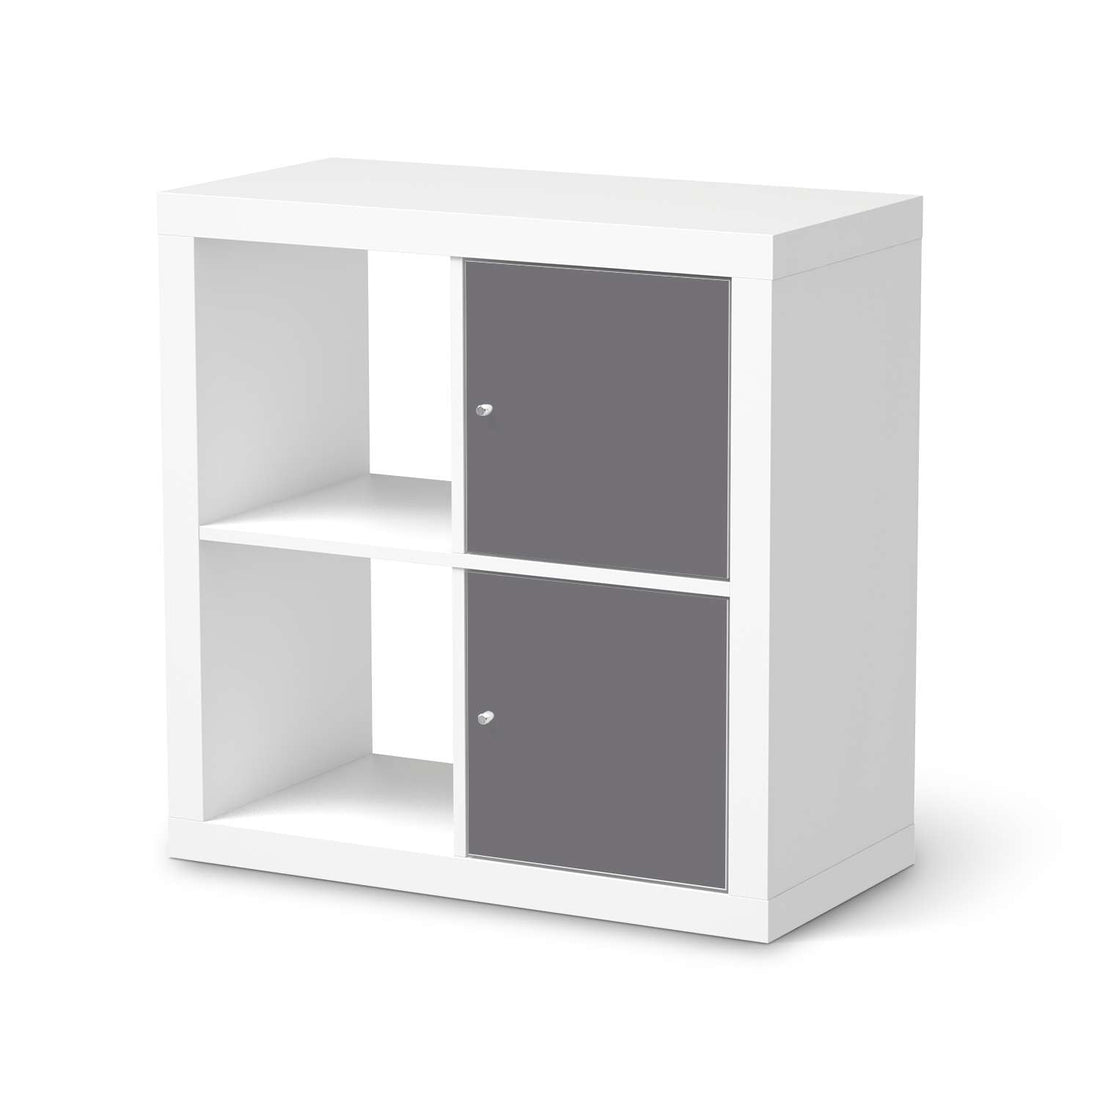 Klebefolie für Möbel Grau Light - IKEA Expedit Regal 2 Türen Hoch  - weiss